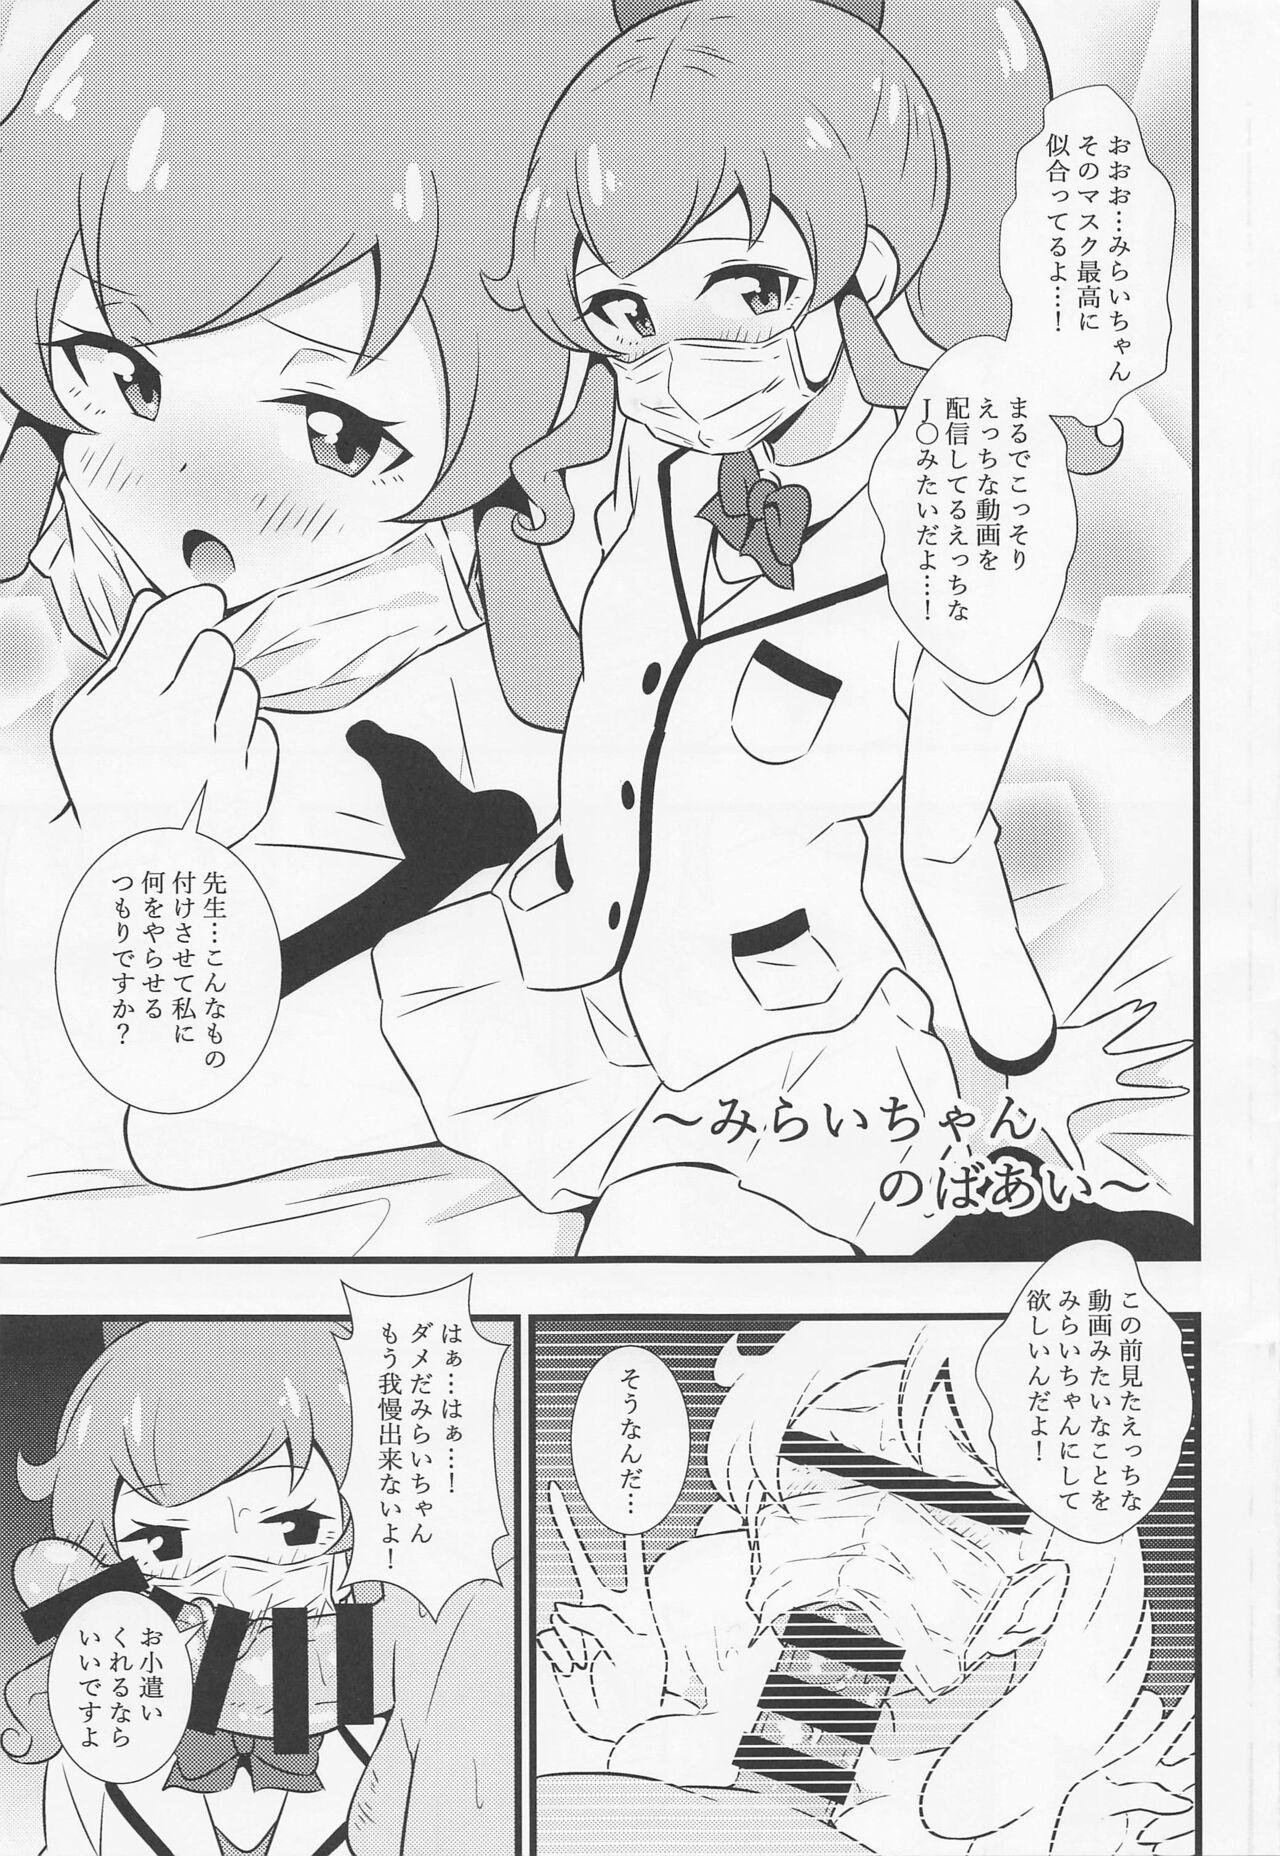 Gayemo Ecchi na Hon Matomete mita 3 - Kiratto pri chan Bisex - Page 4